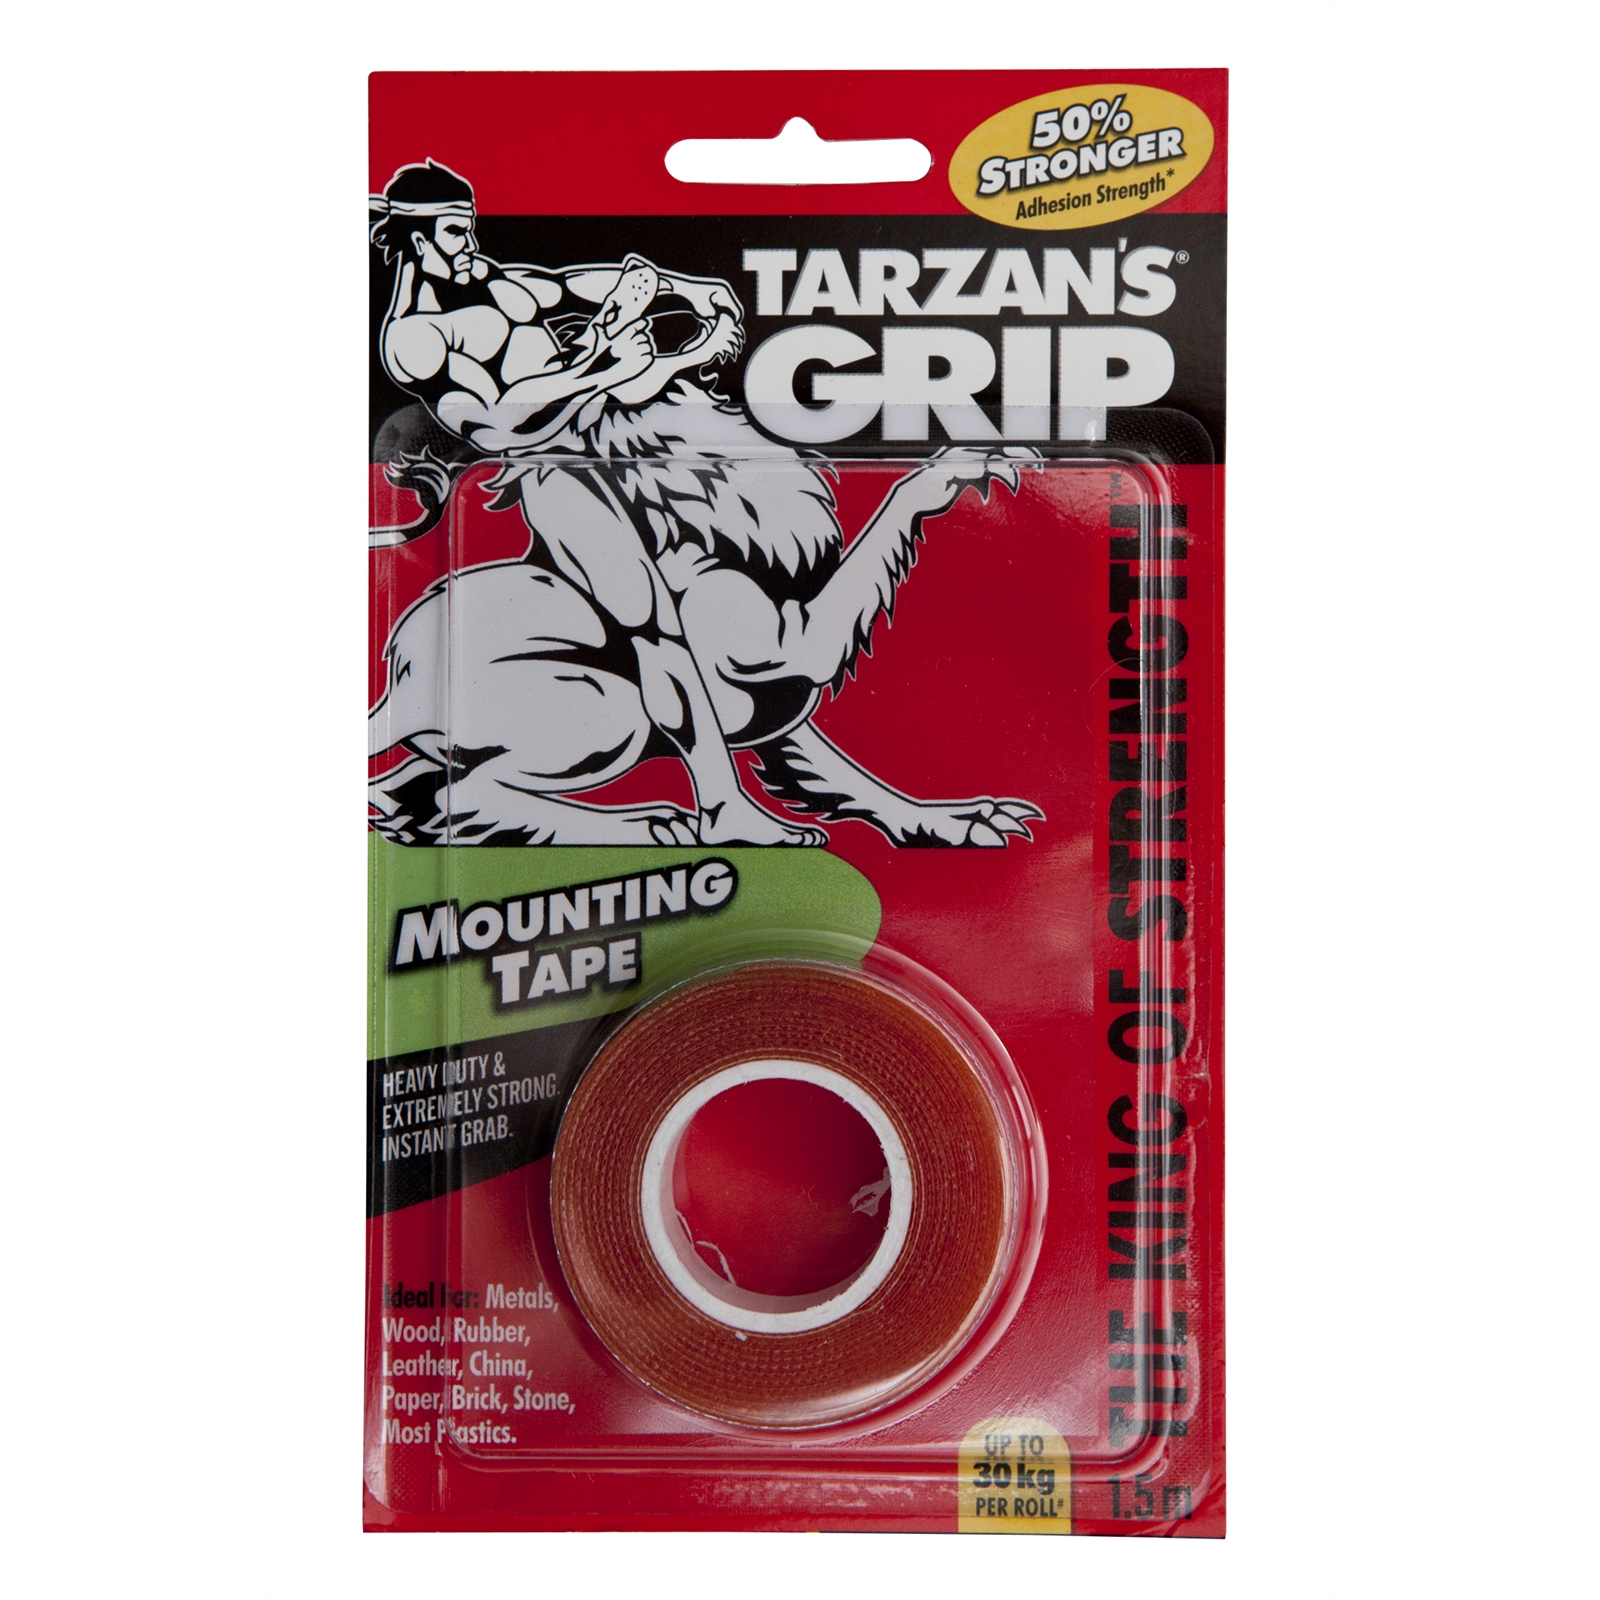 Tarzan's Grip 1.5m Heavy Duty Mounting Tape